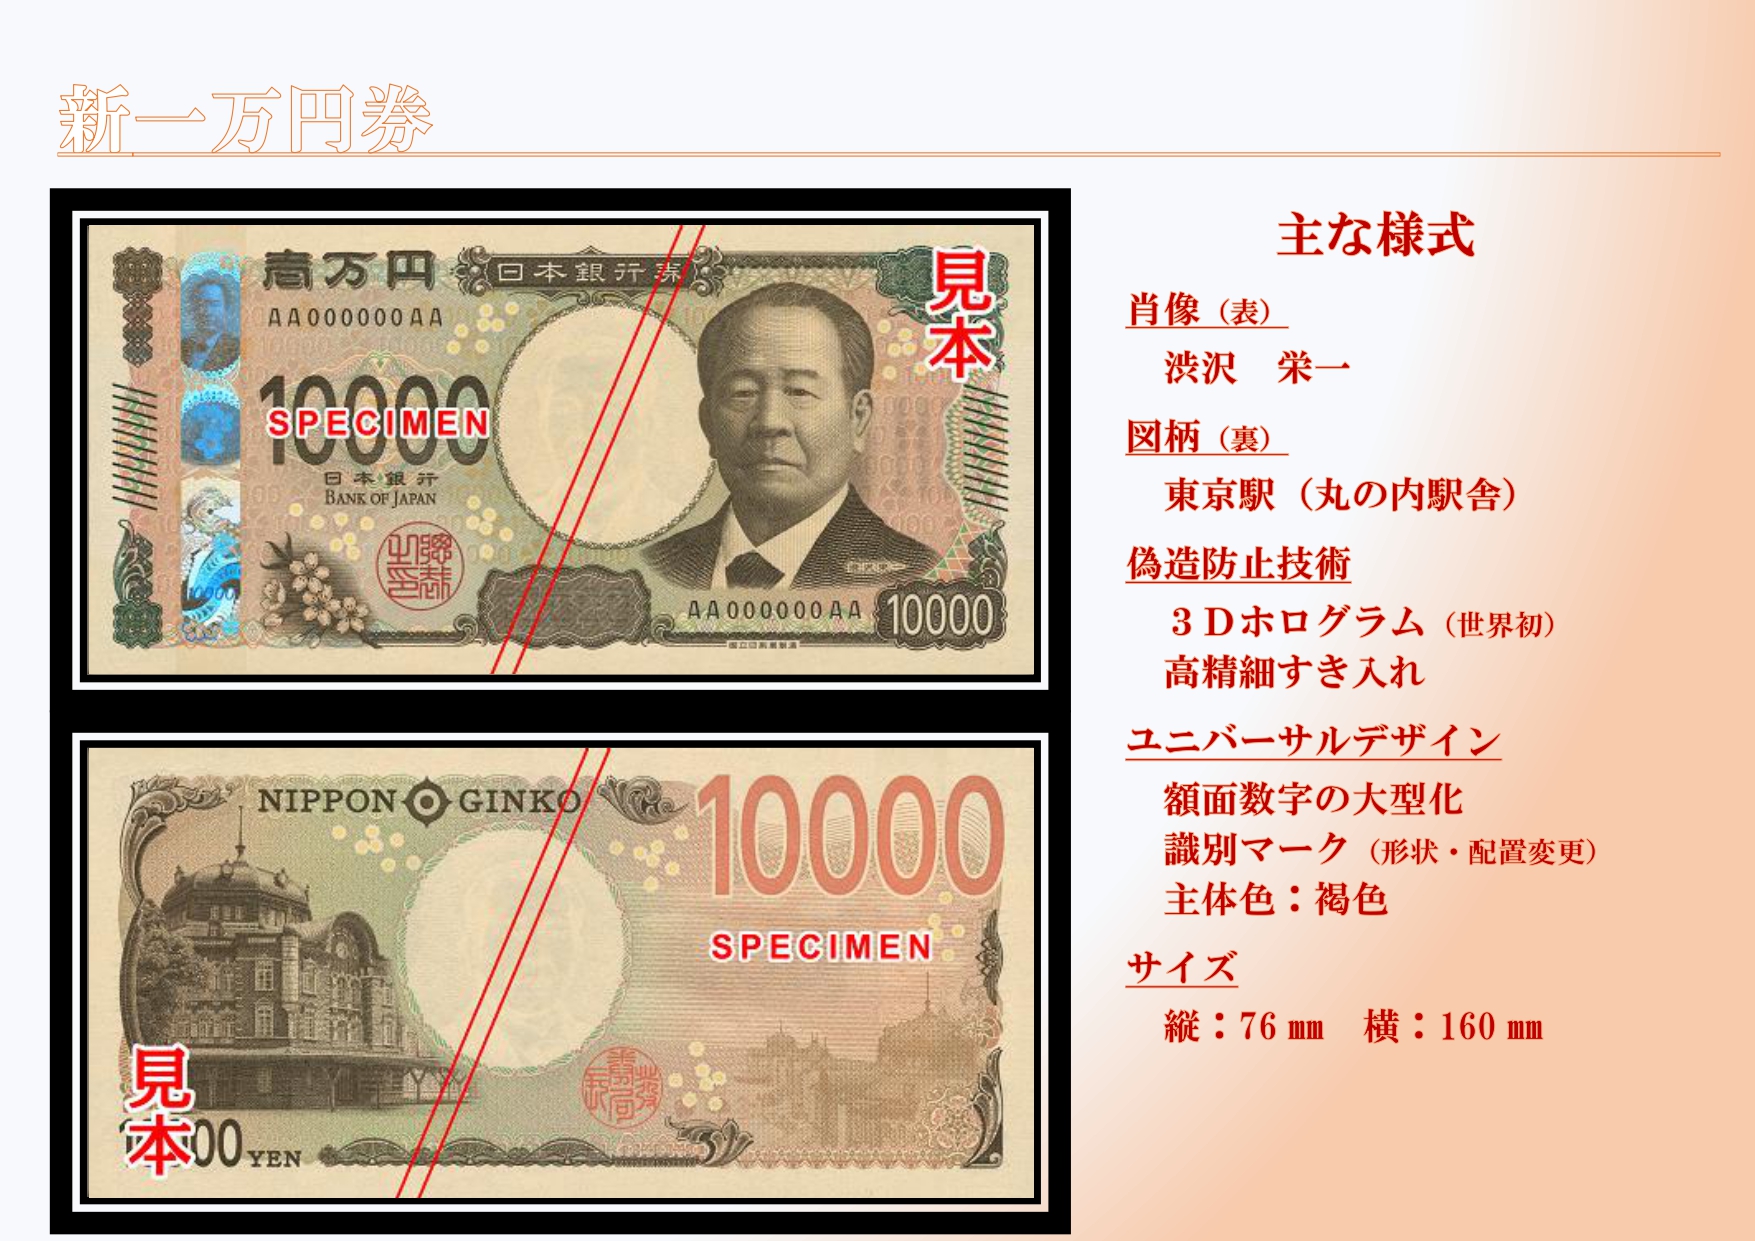 日銀、新1万円札を公開 渋沢栄一が浮かび上がる3Dホログラム採用 偽造 ...